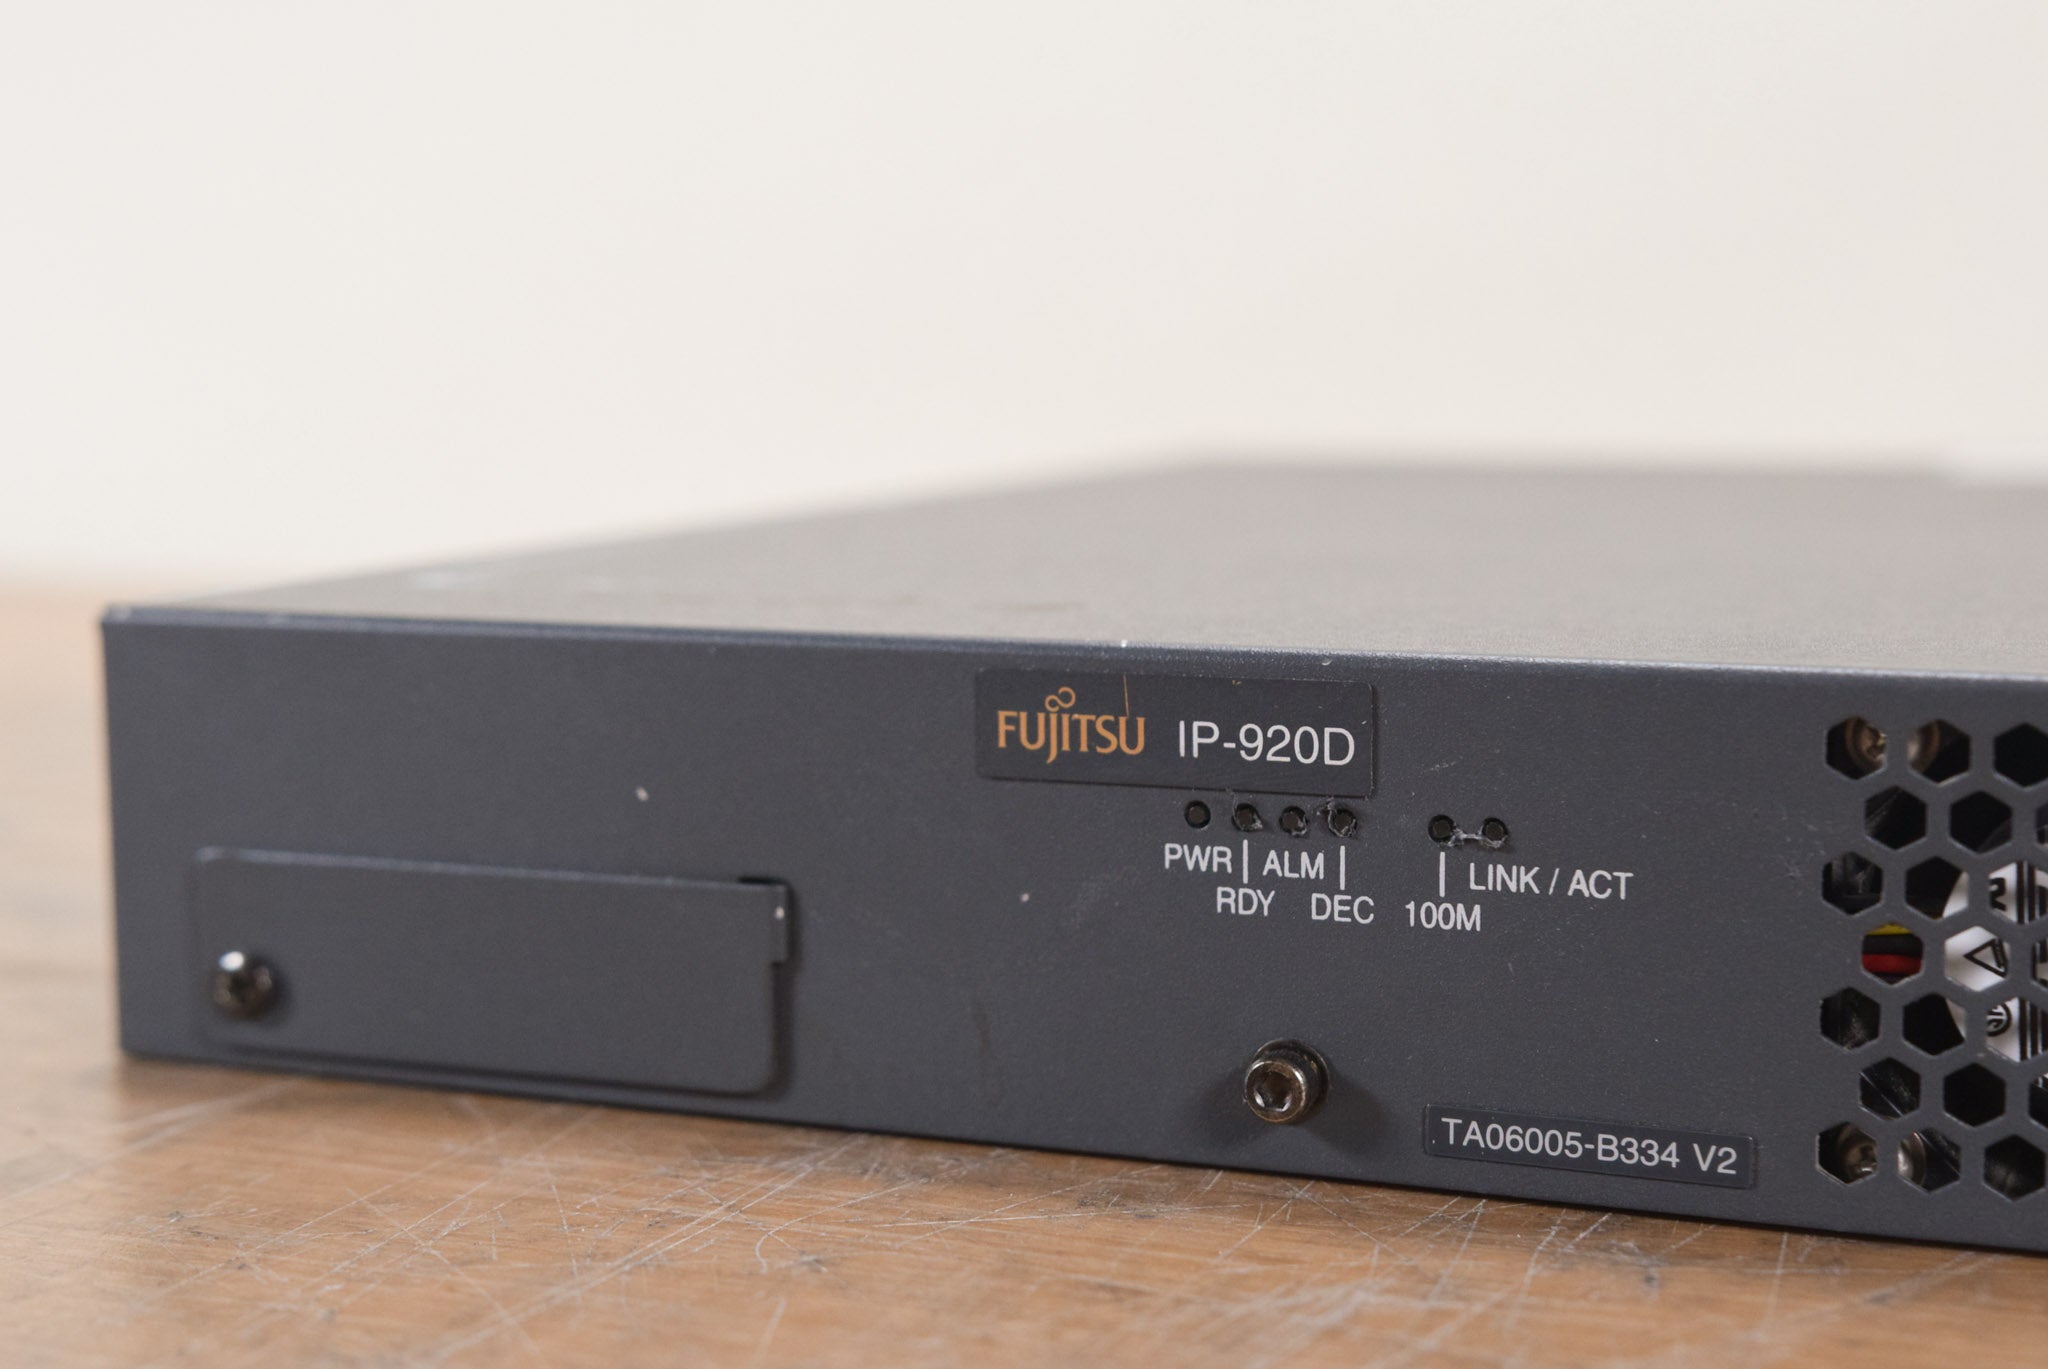 Fujitsu IP-920D HD/SD MPEG 4 AVC Video Decoder